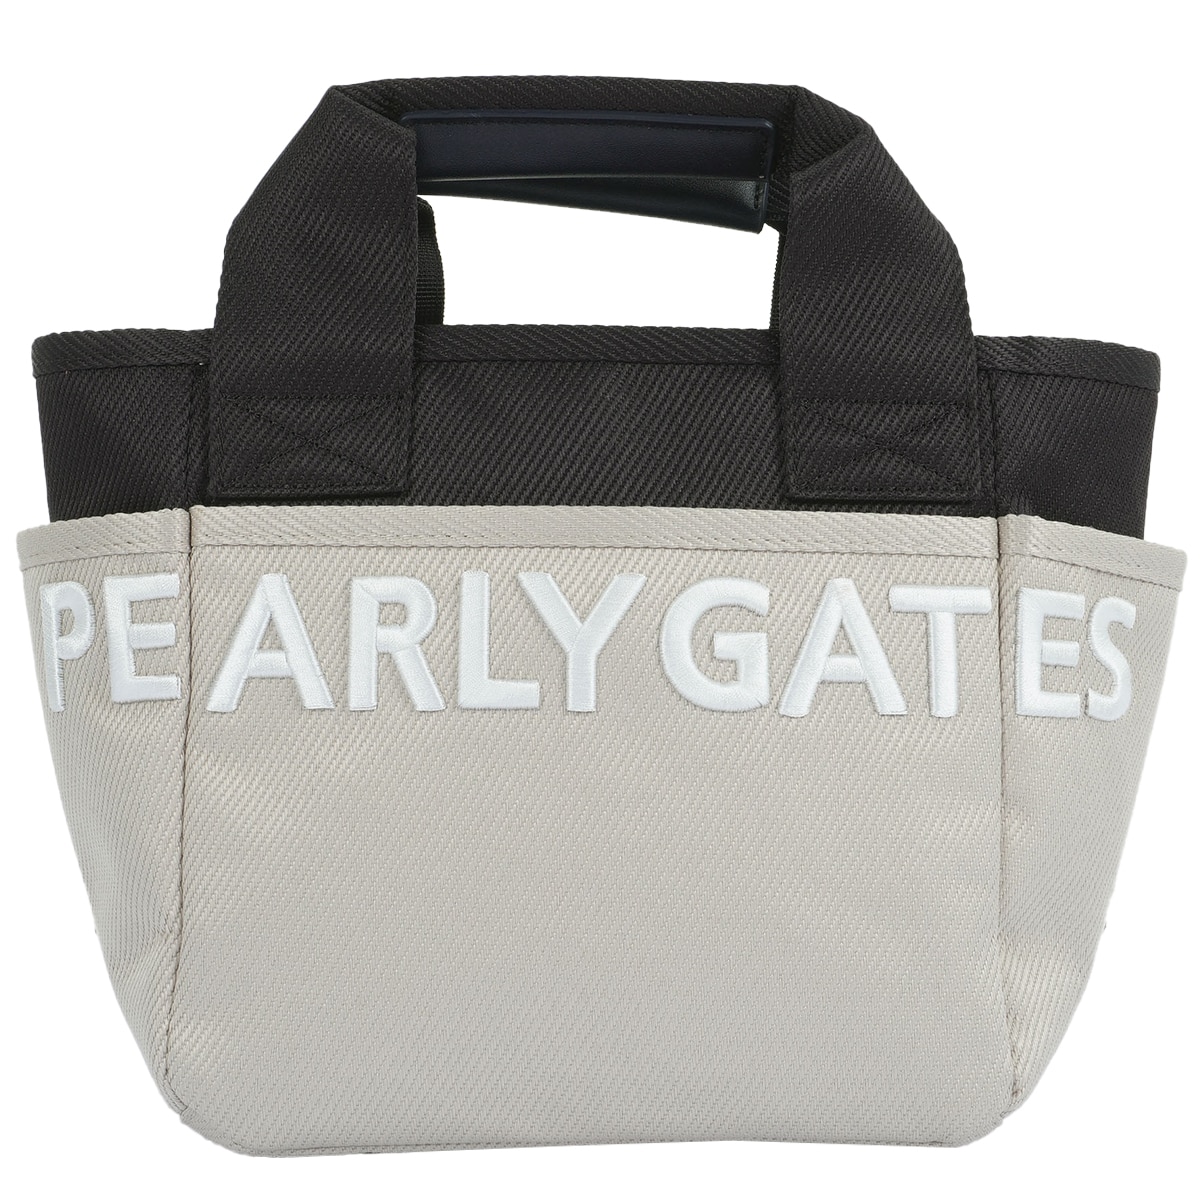 NEXTII カートバッグ(ラウンドバッグ)|PEARLY GATES(パーリーゲイツ 